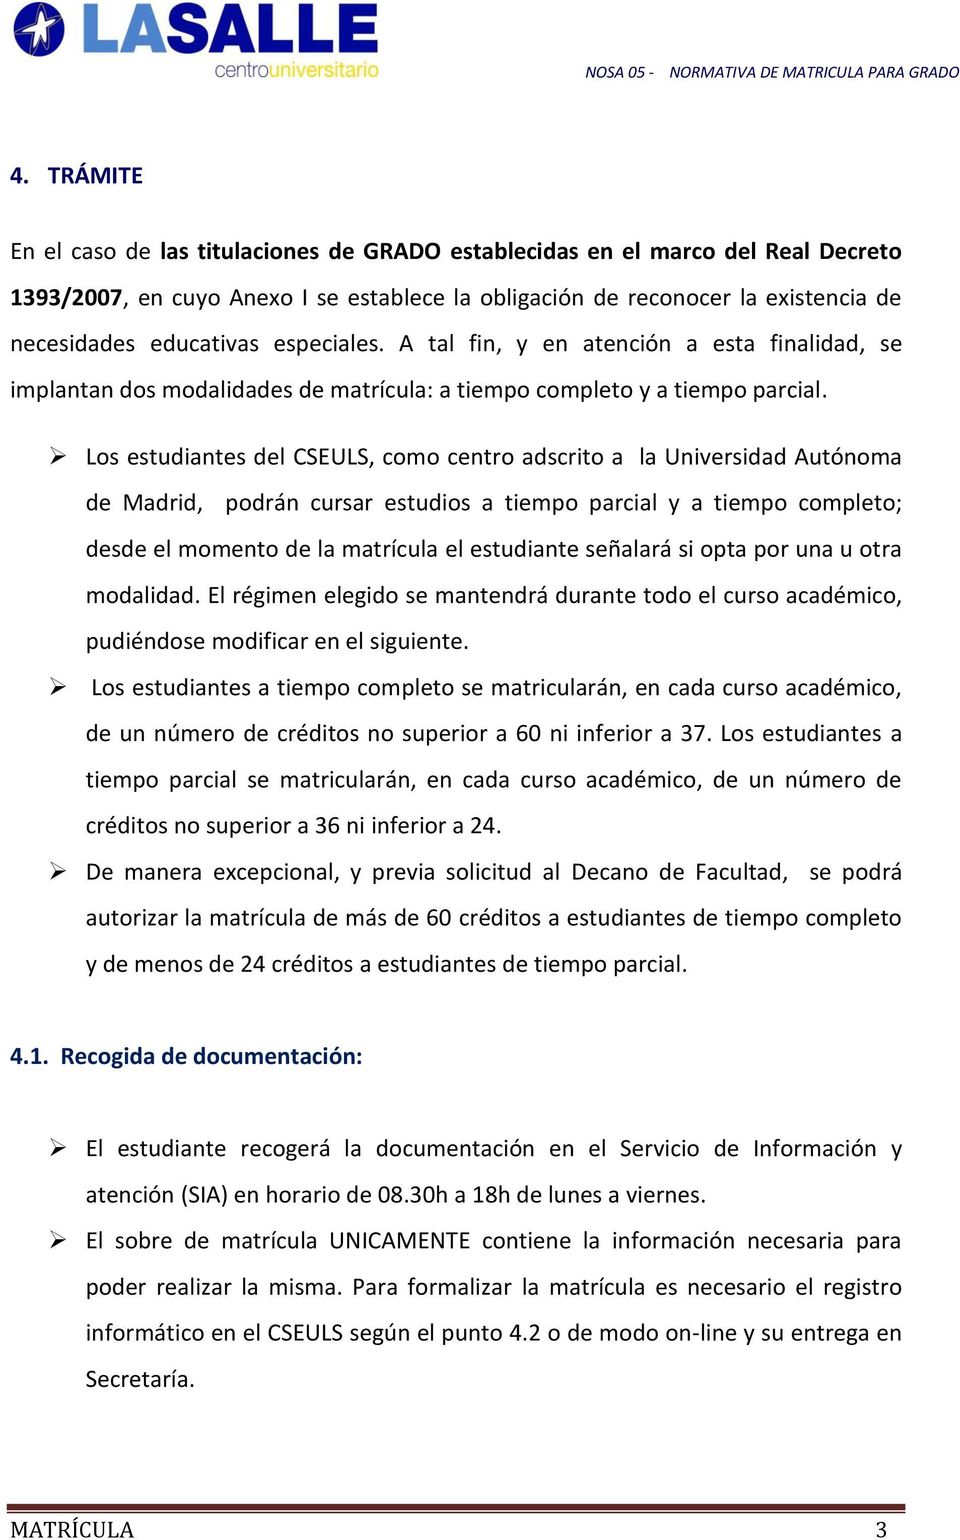 Los estudiantes del CSEULS, como centro adscrito a la Universidad Autónoma de Madrid, podrán cursar estudios a tiempo parcial y a tiempo completo; desde el momento de la matrícula el estudiante